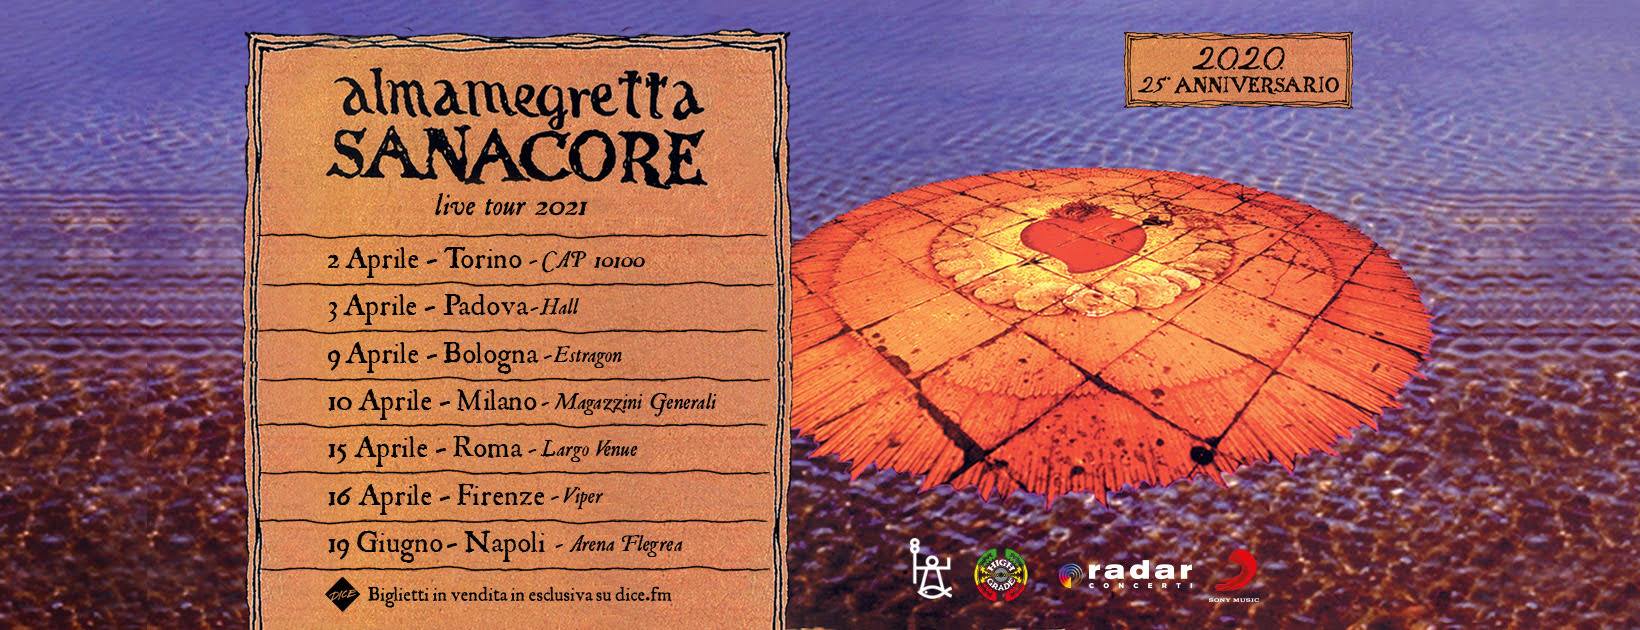 Almamegretta, Sanacore live tour 2021, Hall Padova